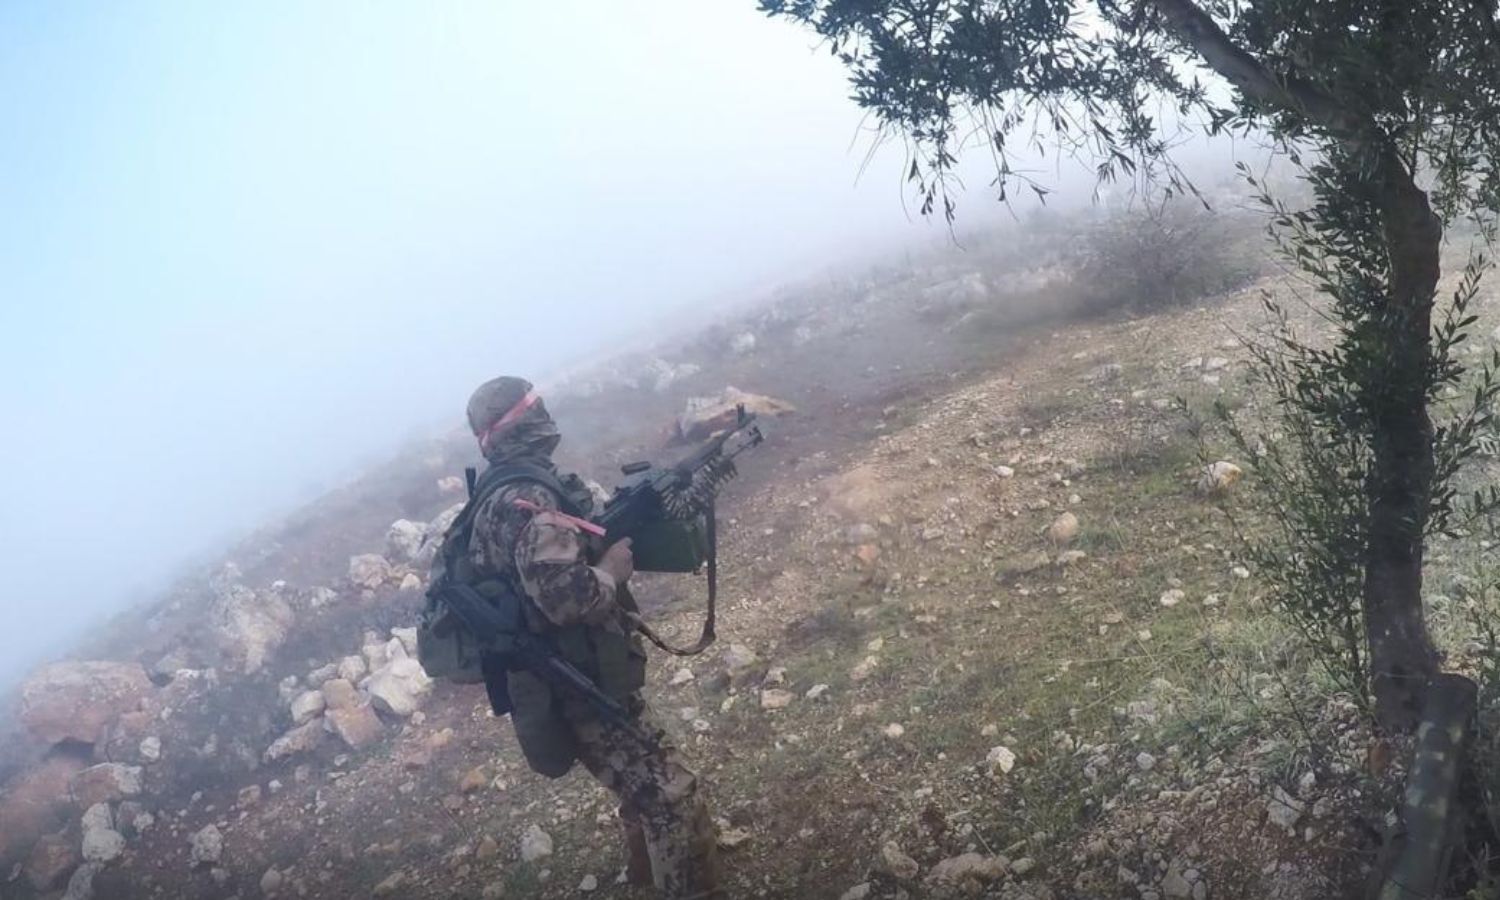 أحد مقاتلي لواء "عمر بن الخطاب" التابع لـ "هيئة تحرير الشام" خلال عملية "انغماسية" على نقاط قوات النظام على محور بلدة أورم الكبرى بريف حلب الغربي- 19 كانون الثاني 2023 (أمجاد)